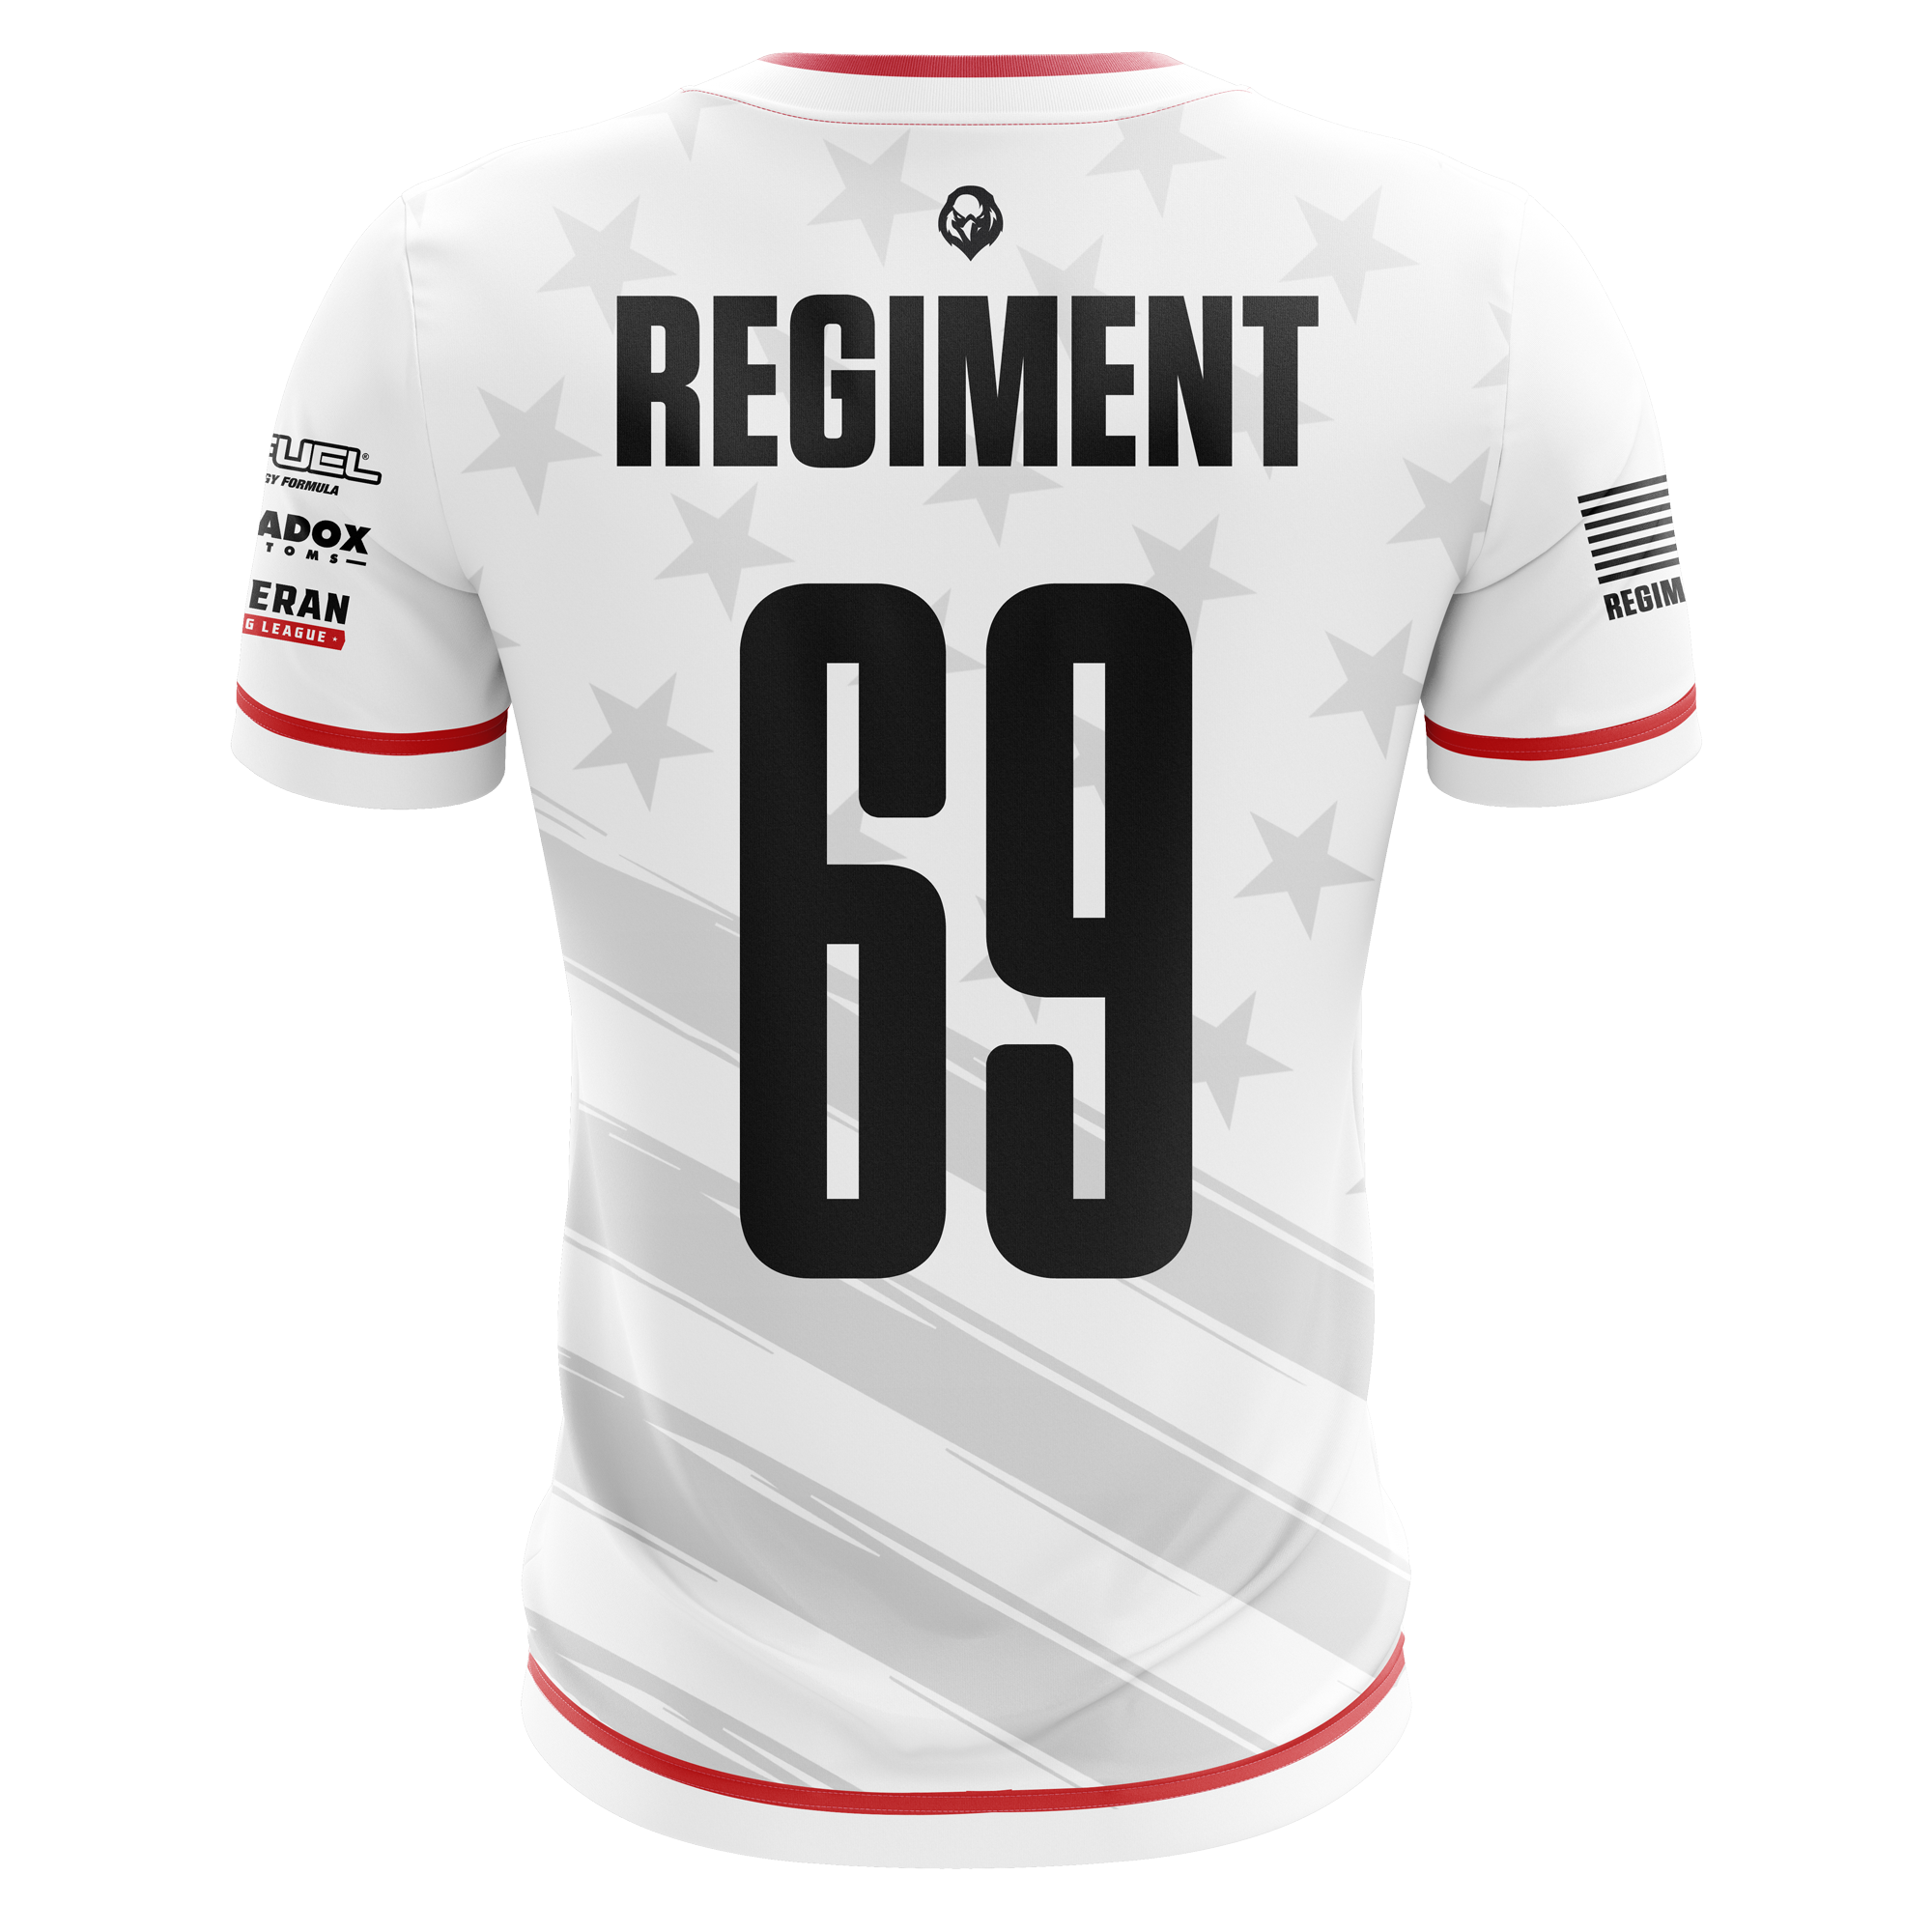 REGIMENT Jersey - White